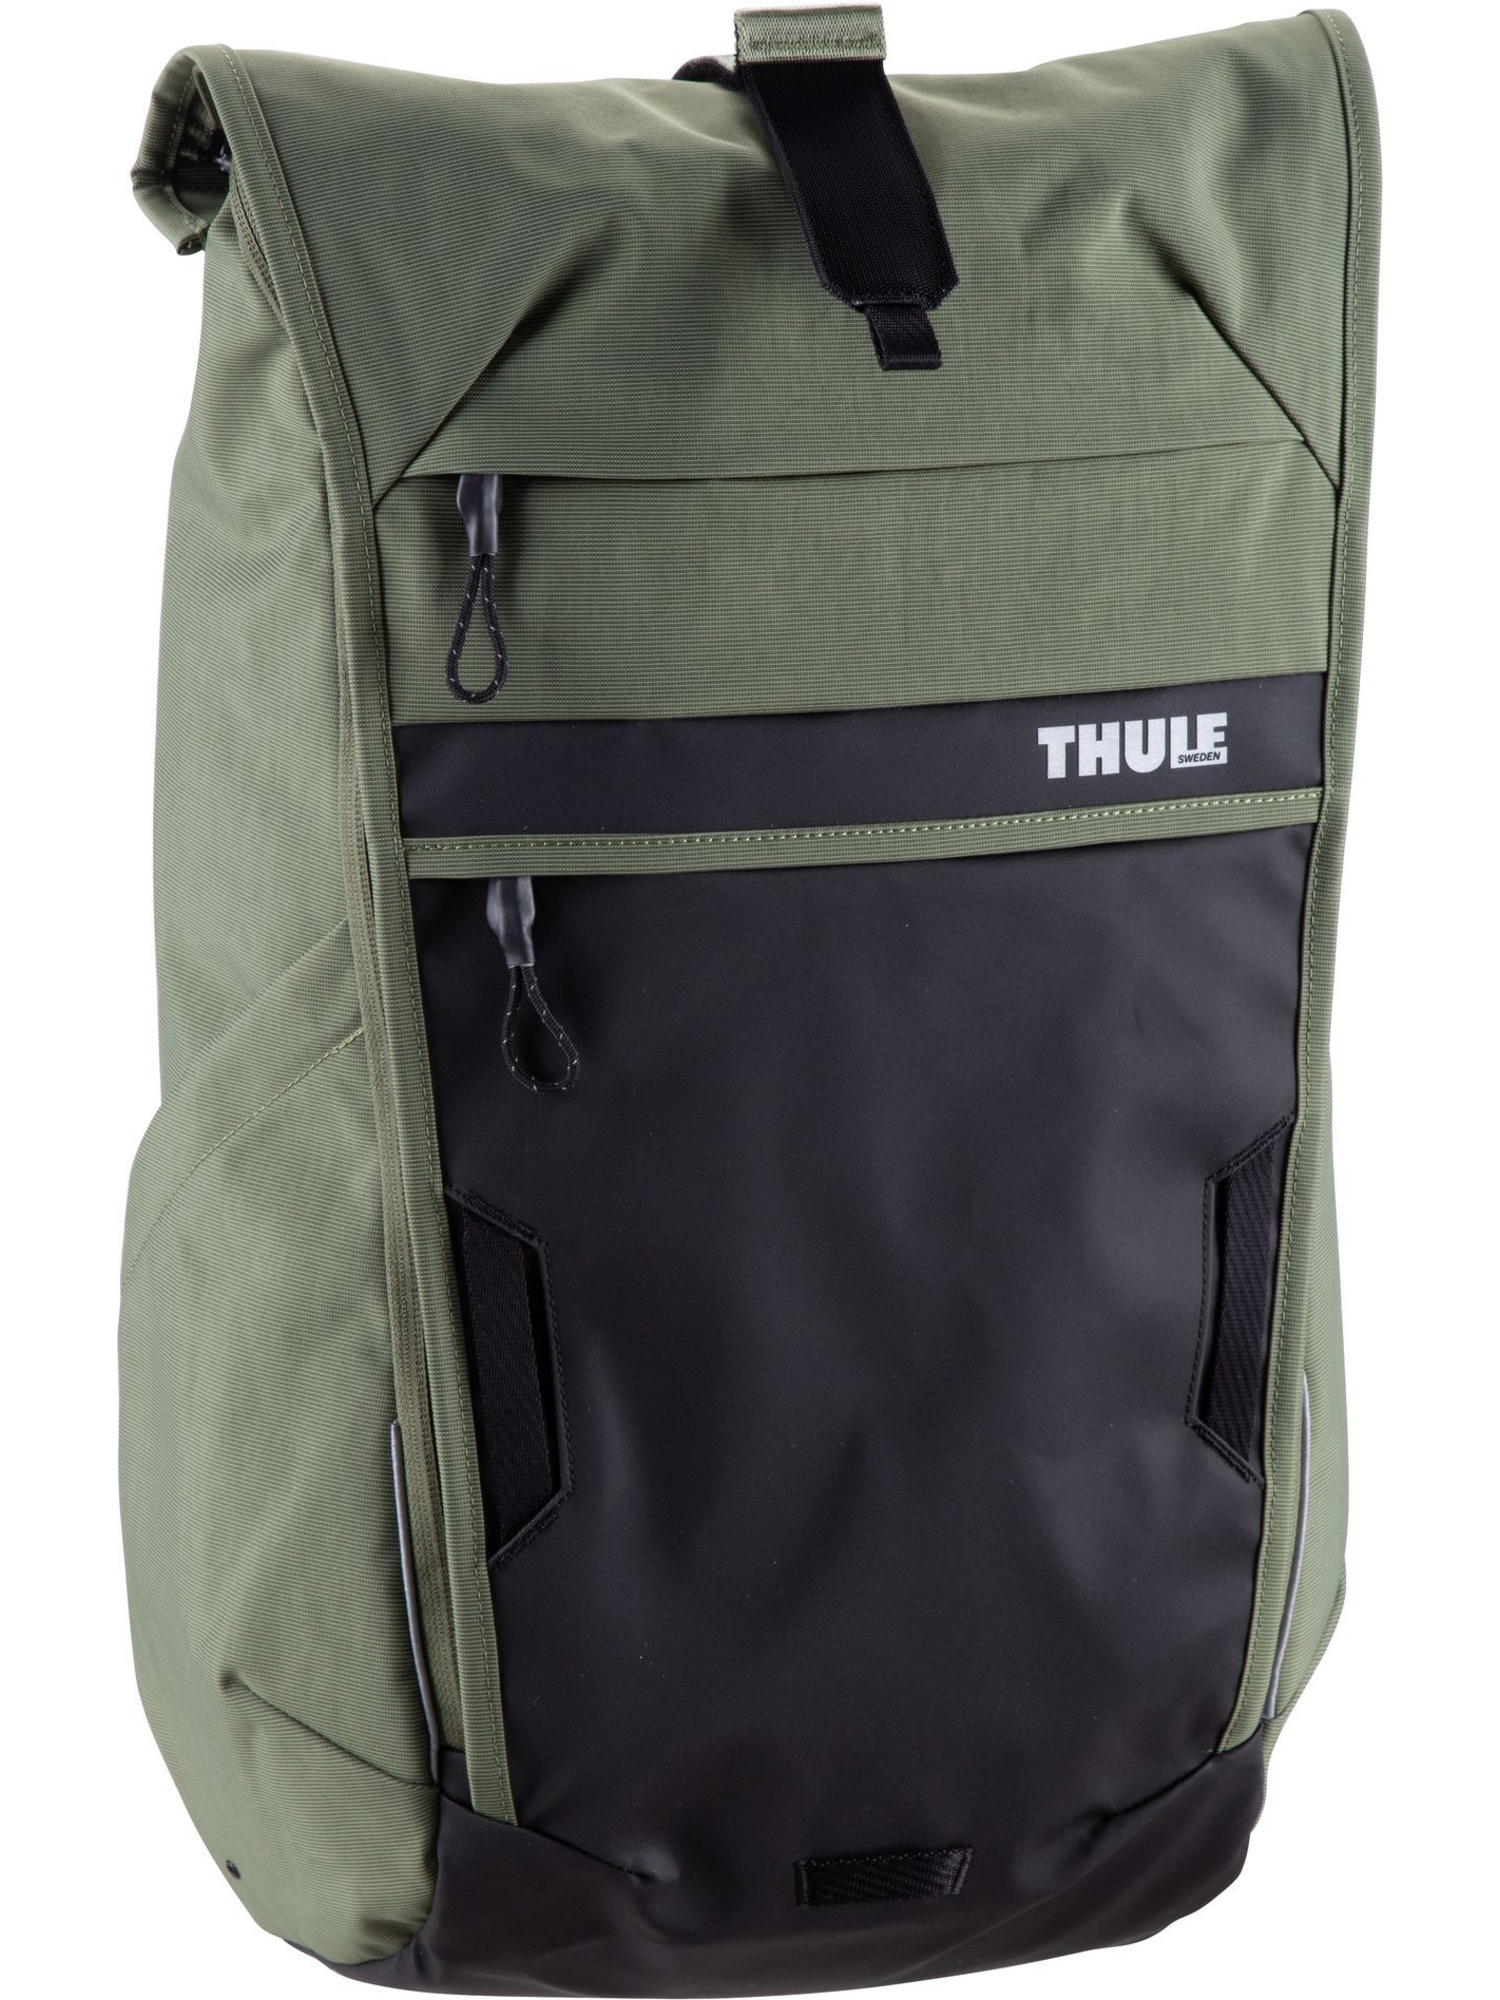 рюкзак thule backpack paramount commuter backpack 18l цвет olivine Рюкзак Thule/Backpack Paramount Commuter Backpack 18L, цвет Olivine